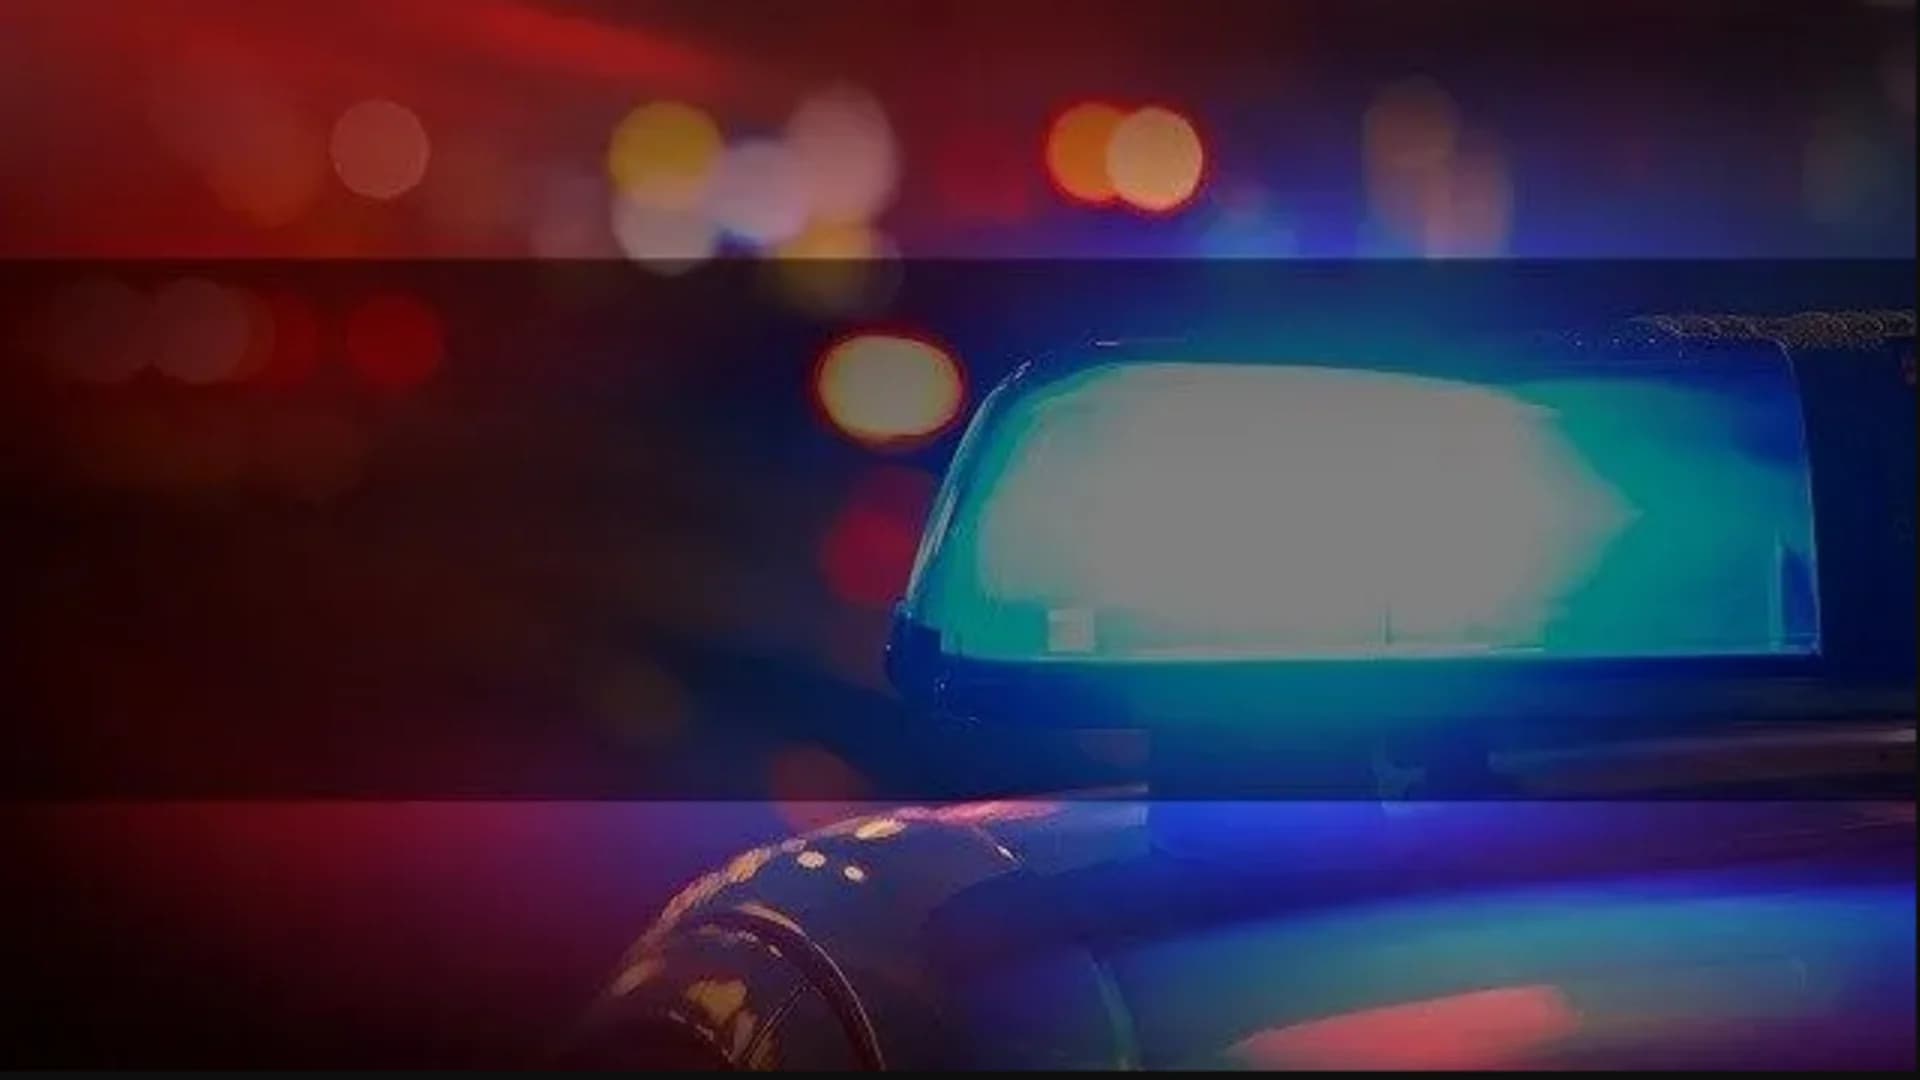 Police: Man shot in genitals in Bridgeport